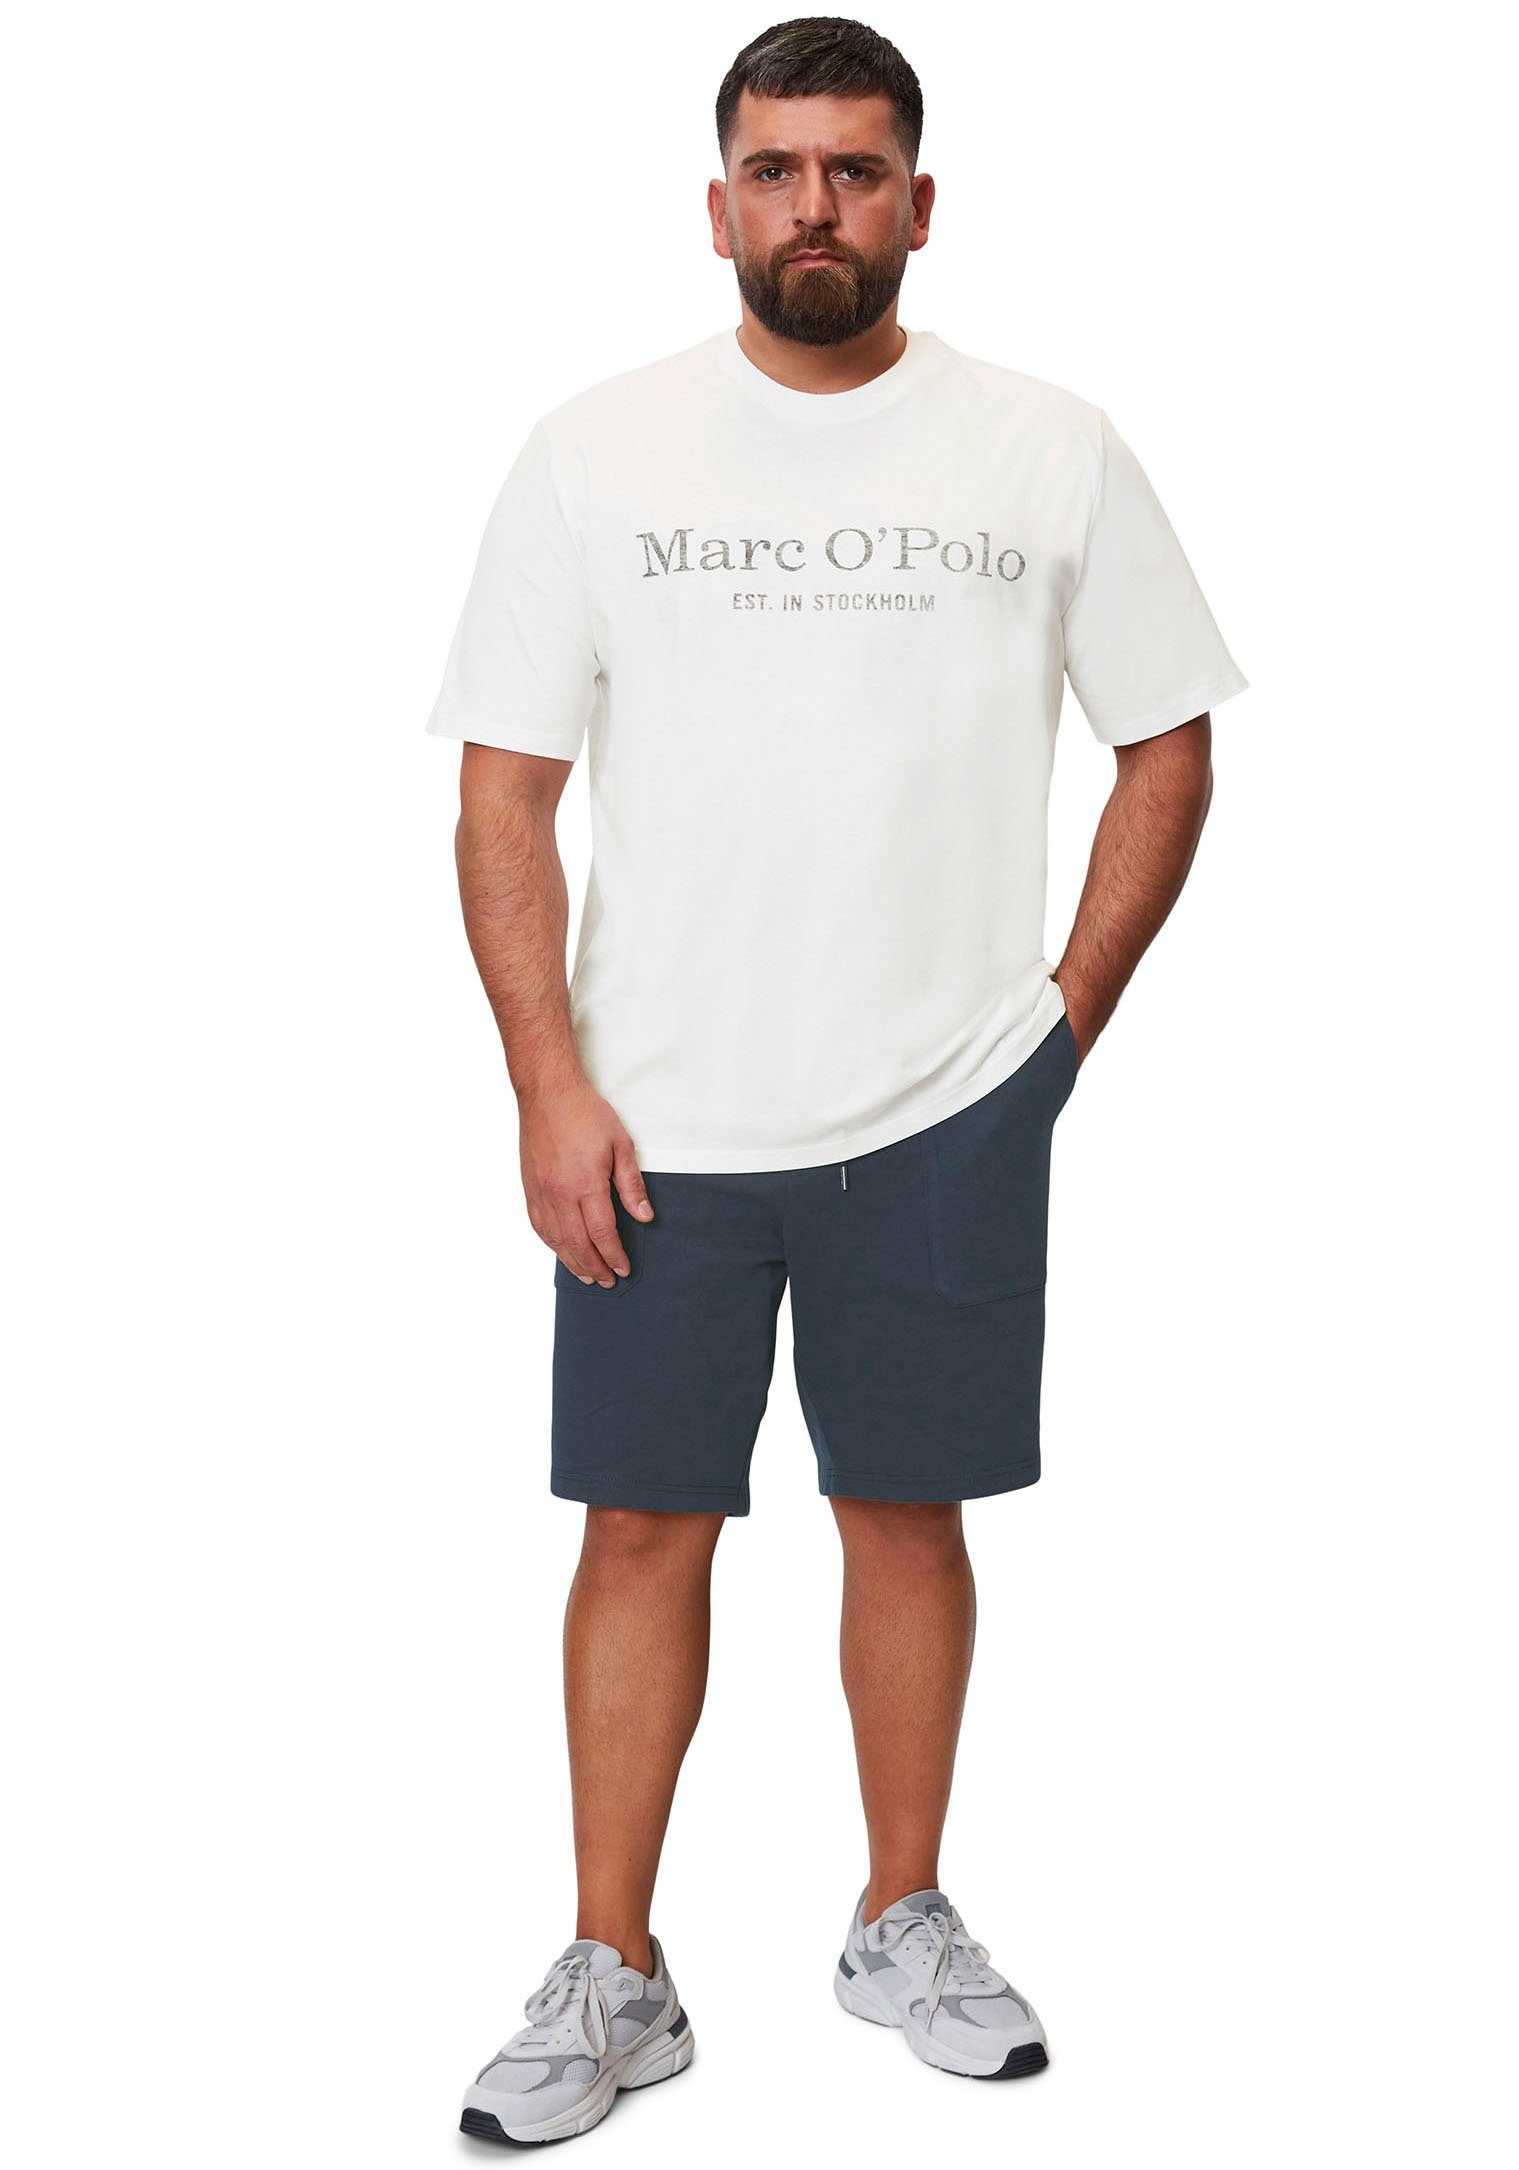 T-Shirt in white O'Polo Big&Tall-Größen Marc